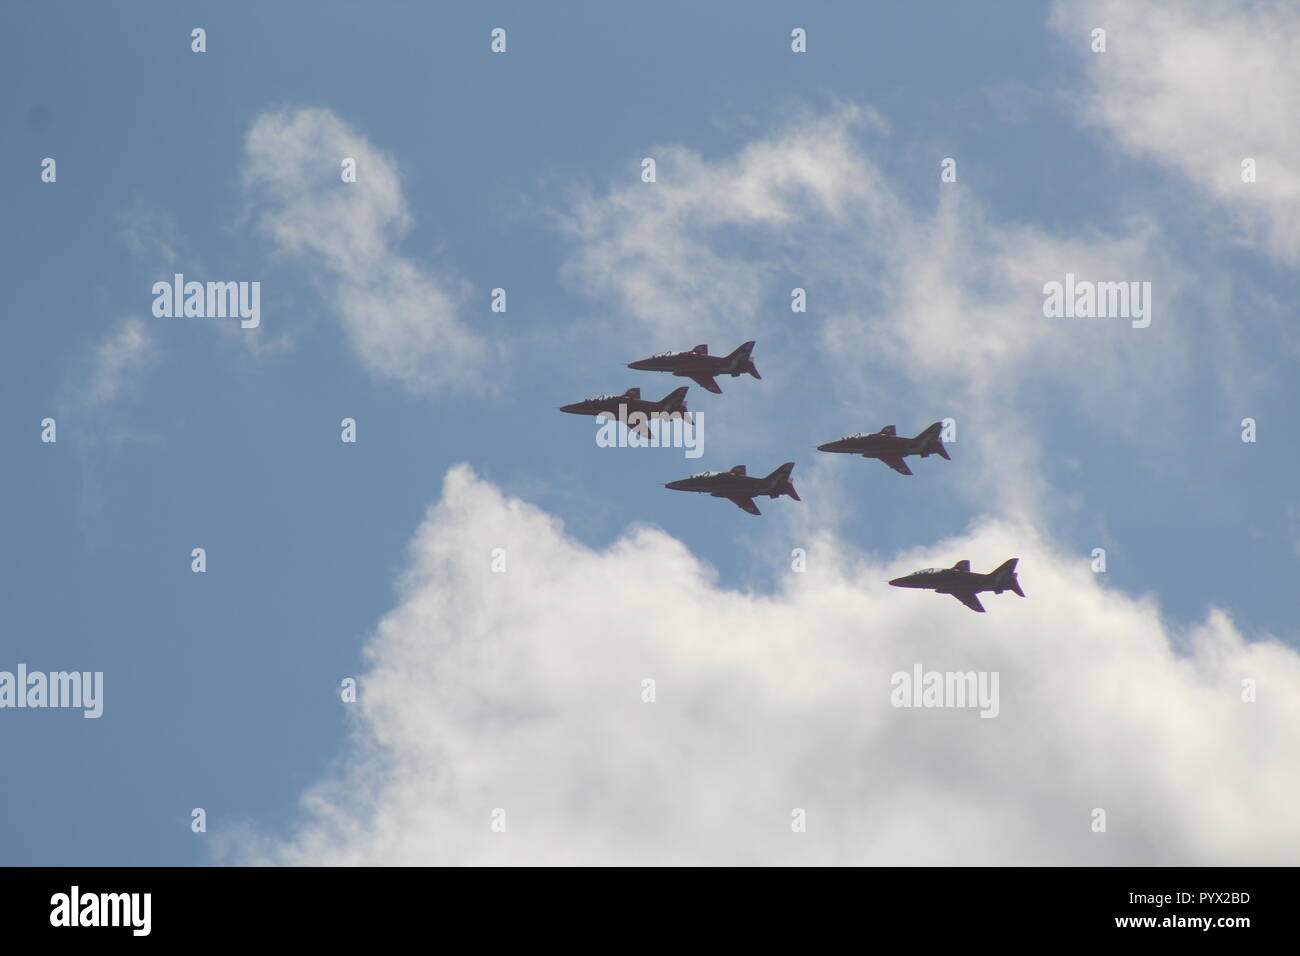 Des flèches rouges volant en formation à travers un ciel bleu avec des nuages Banque D'Images